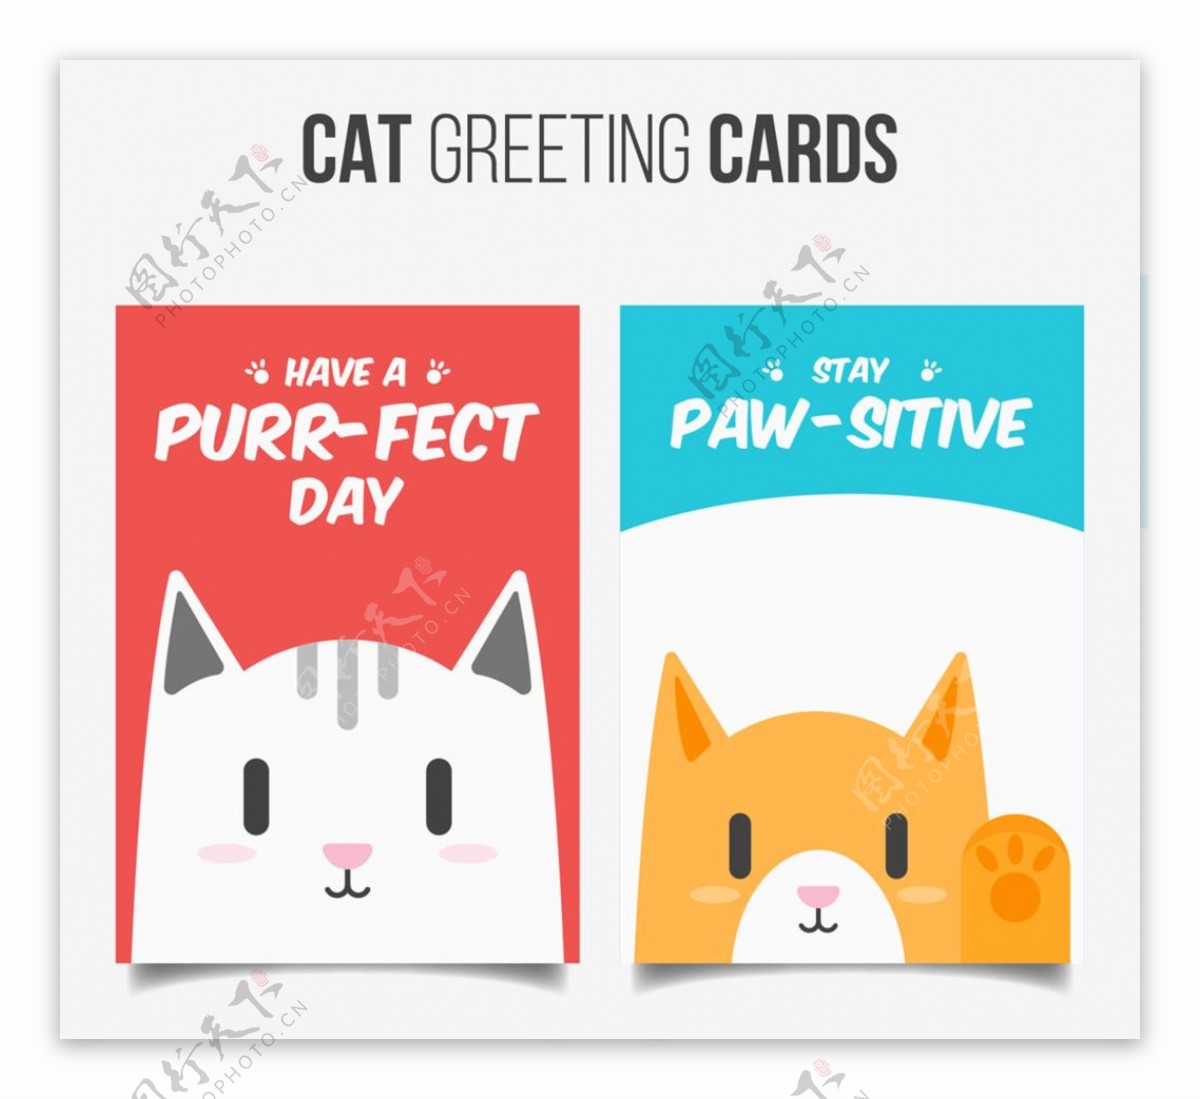 猫咪祝福卡片矢量素材